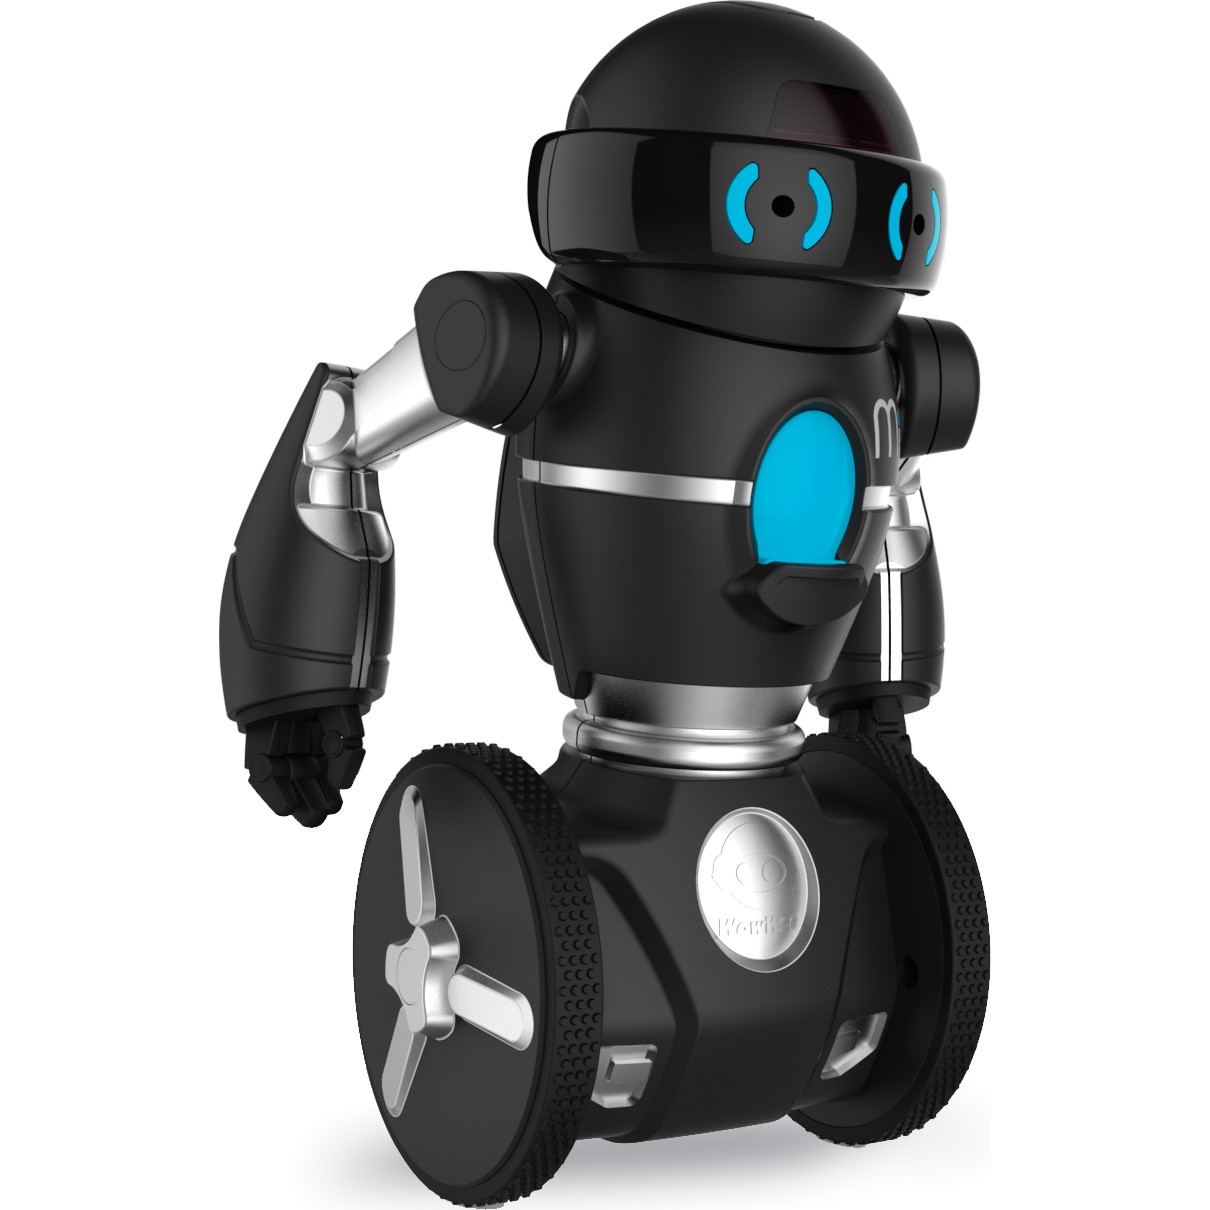 jouet robot mip